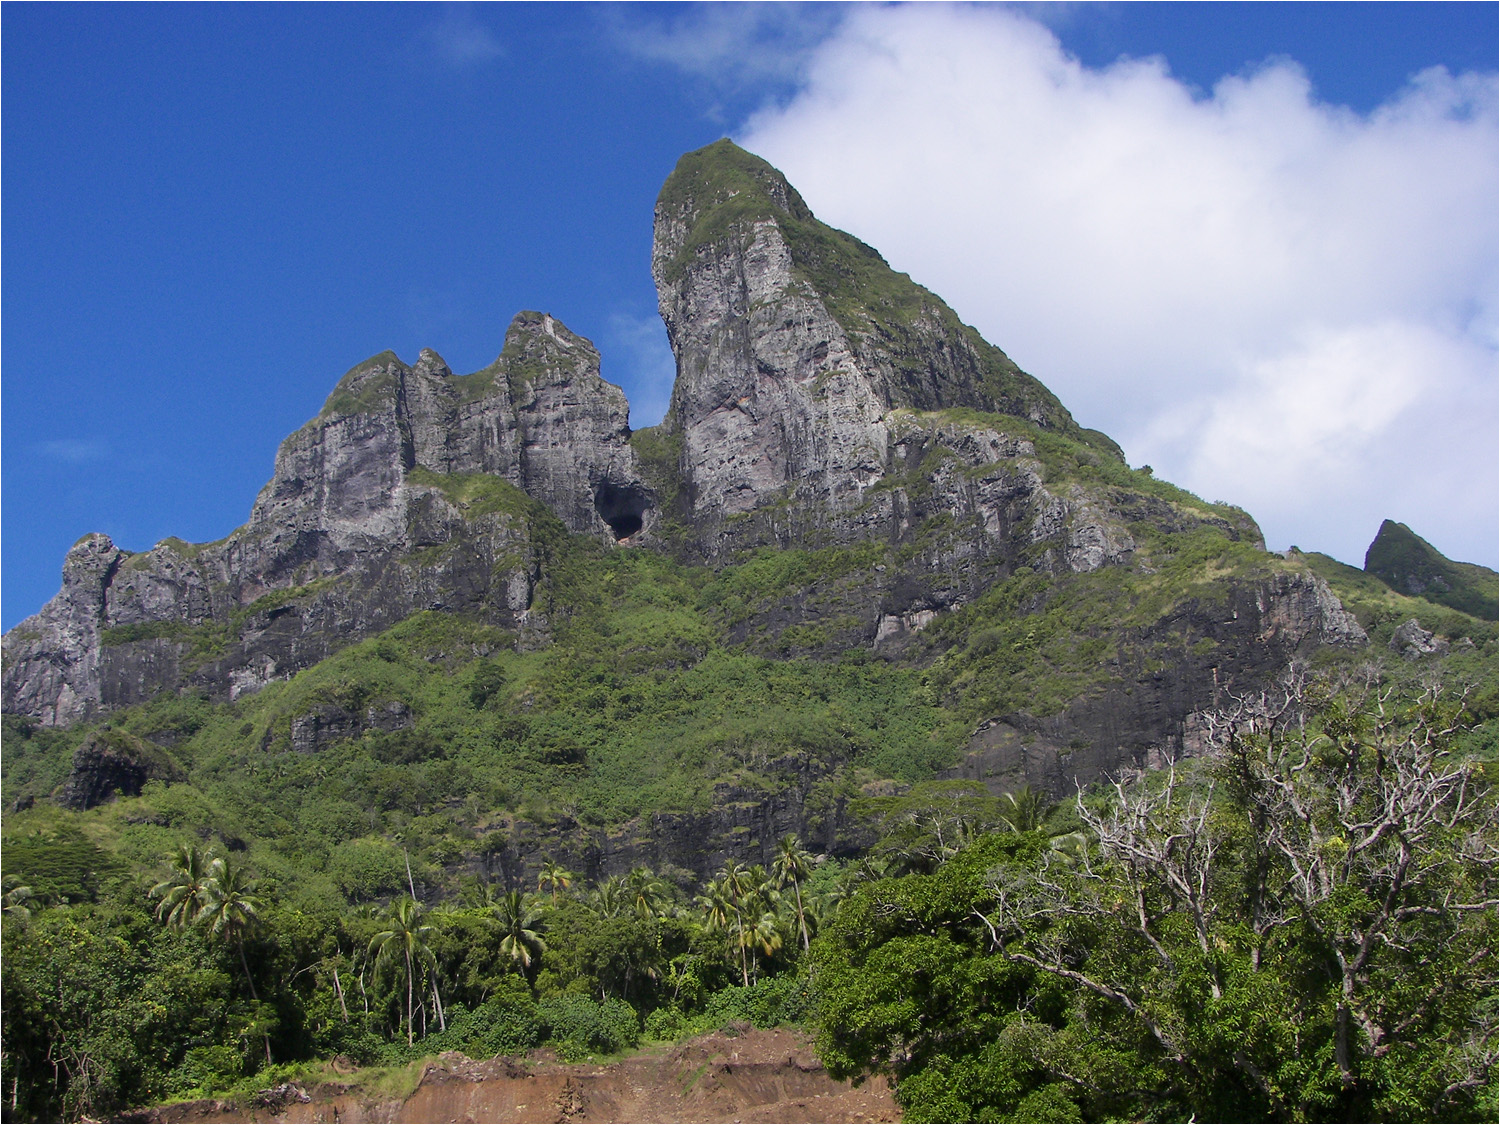 Mount Otemanu